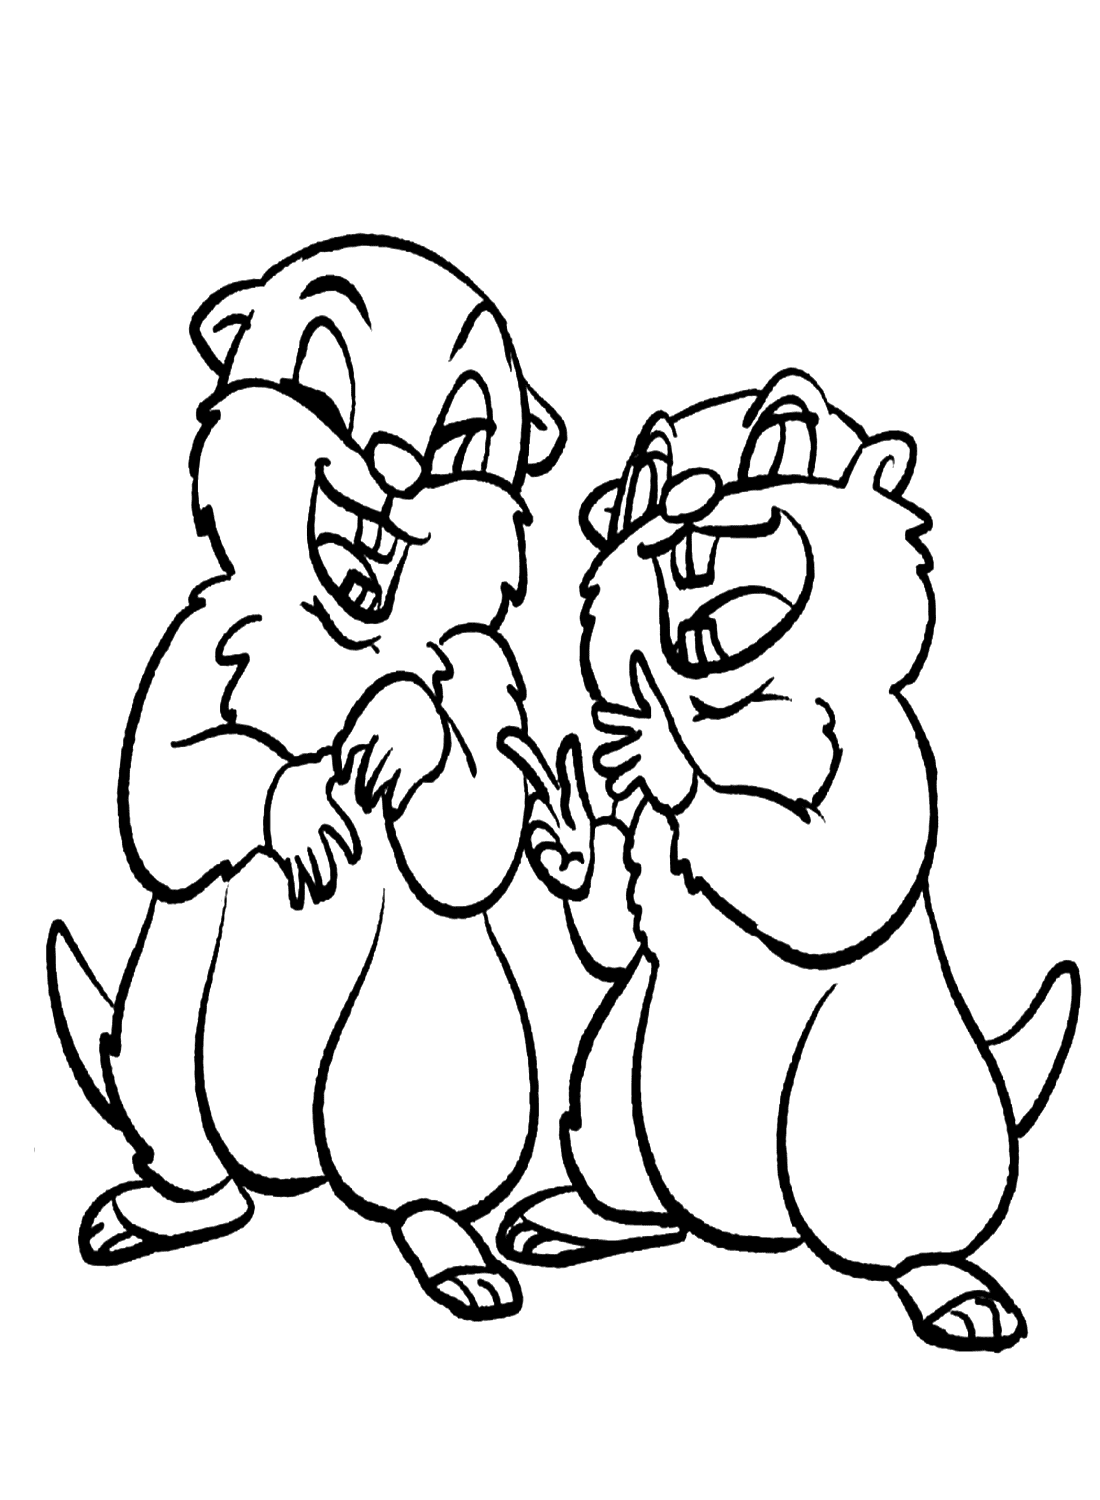 Zwei Cartoon-Murmeltiere von Marmot